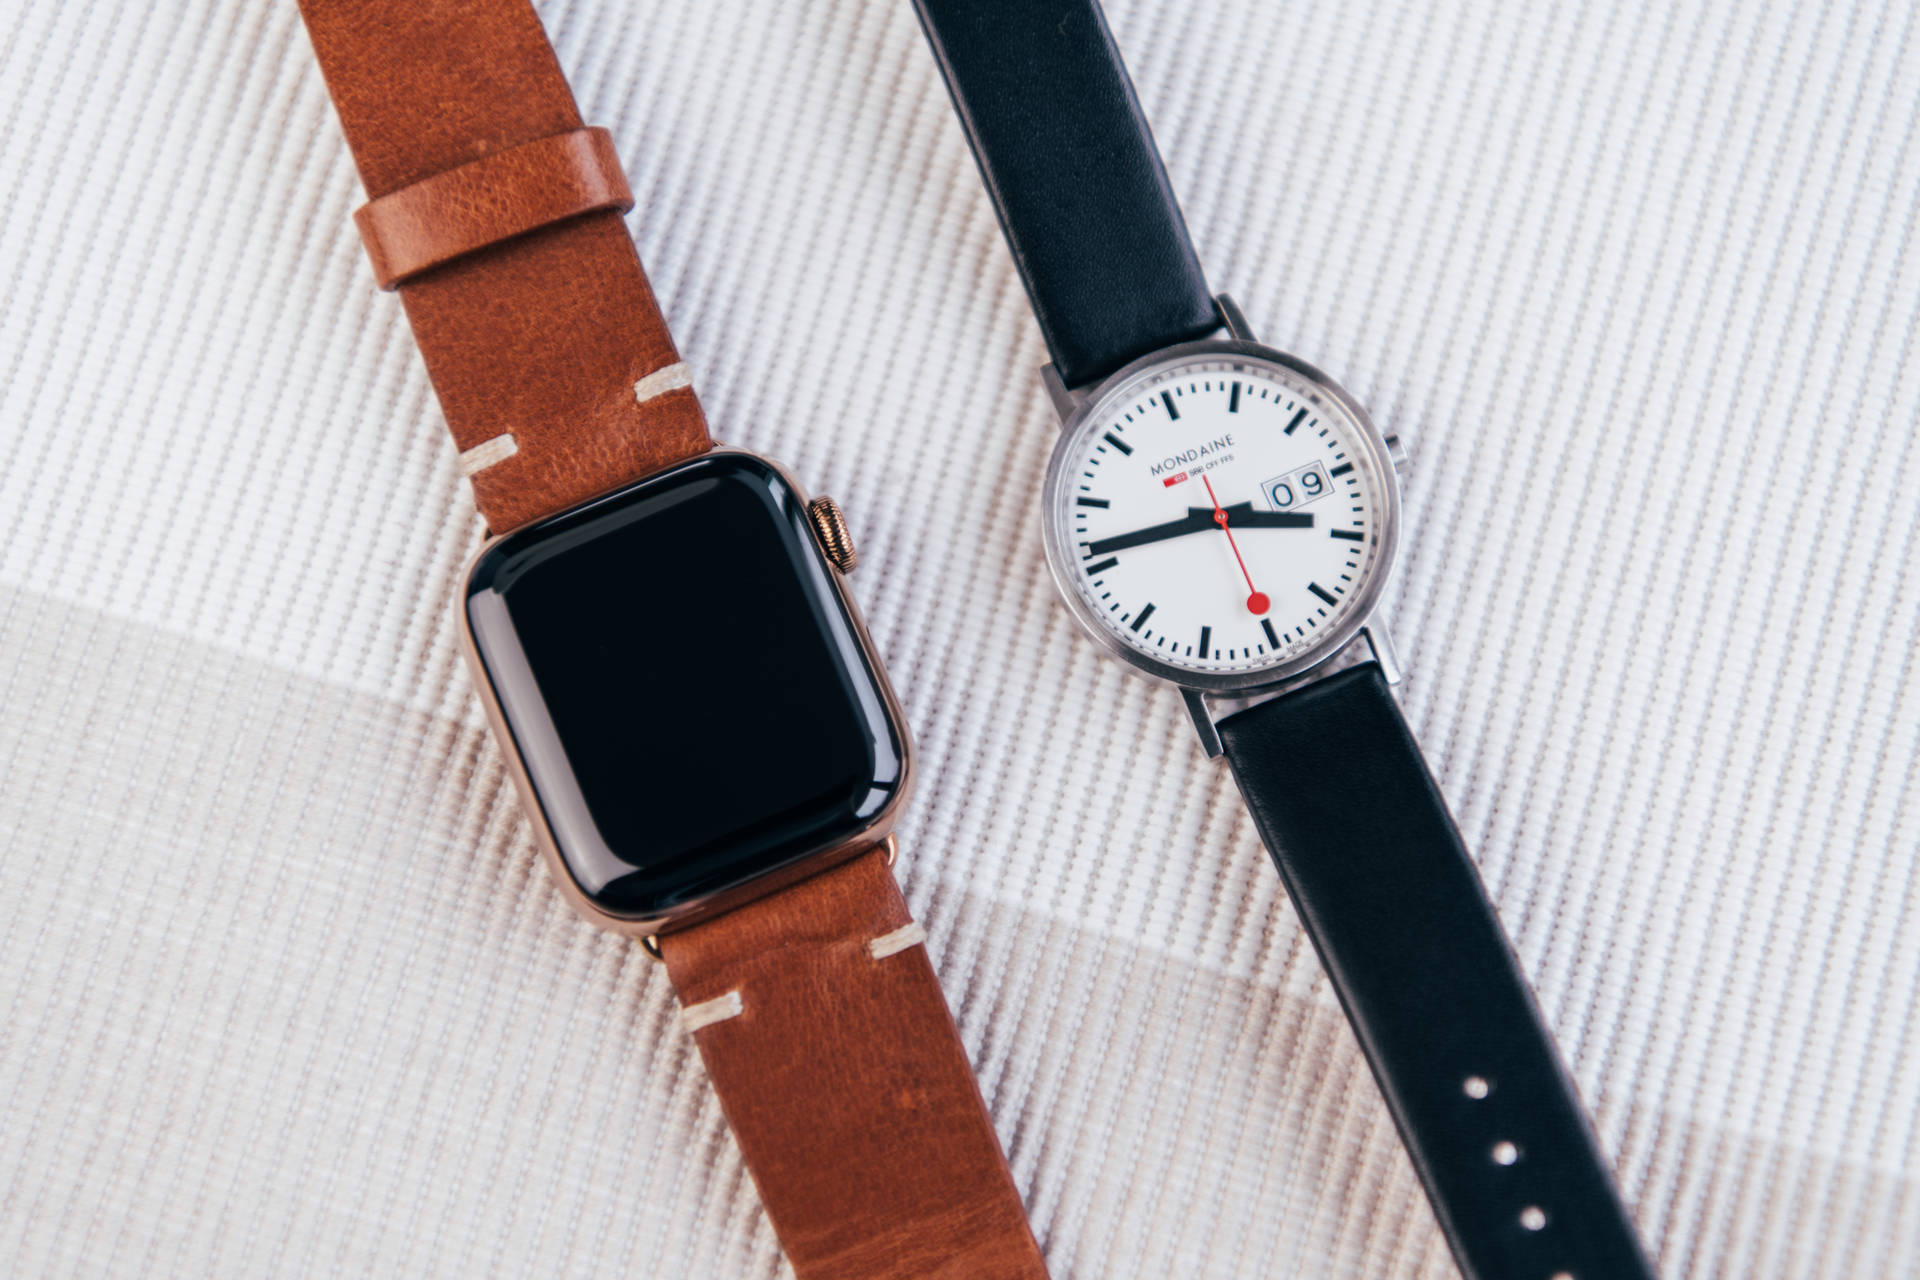 Smartwatch And Analog Wristwatch